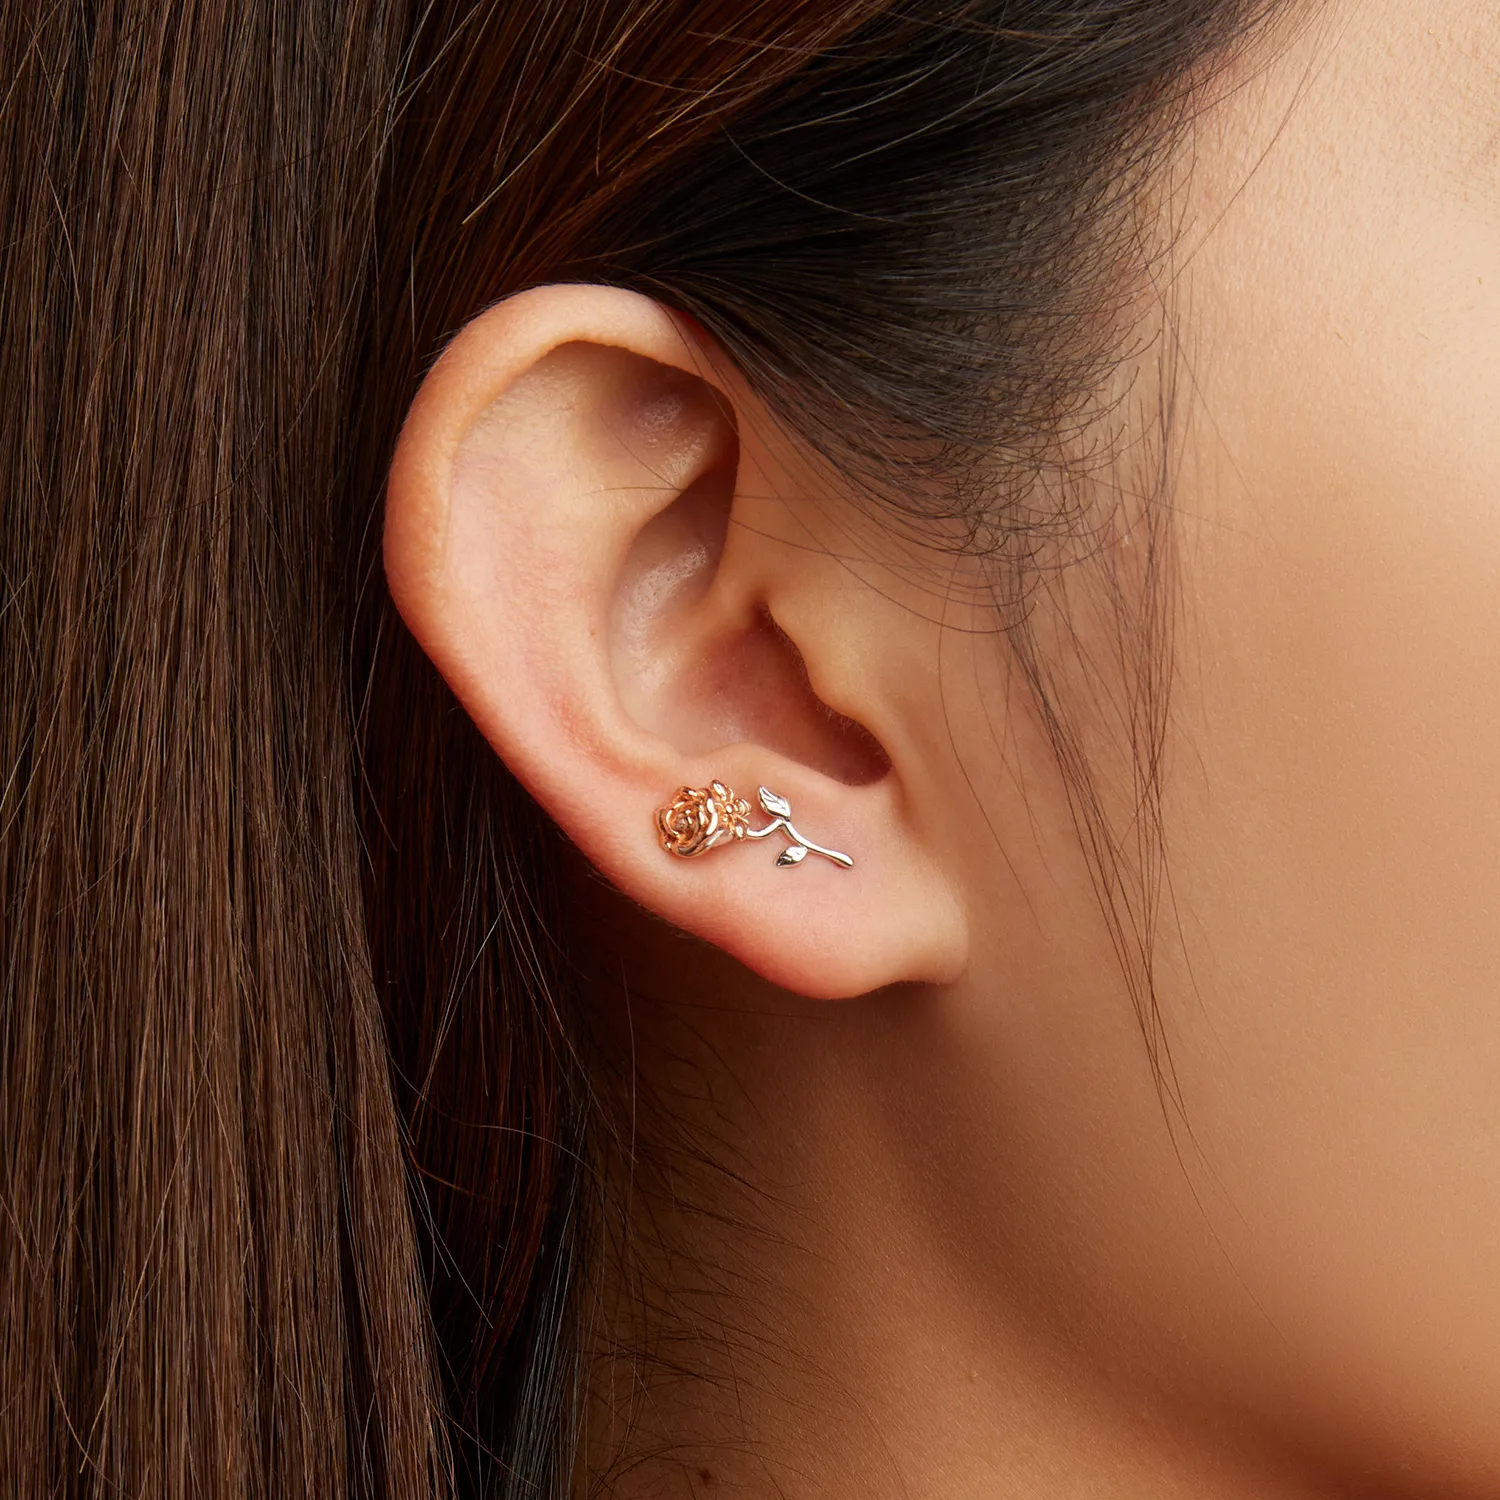 Studuri de ureche în stil Pandora cu roz - BSE682